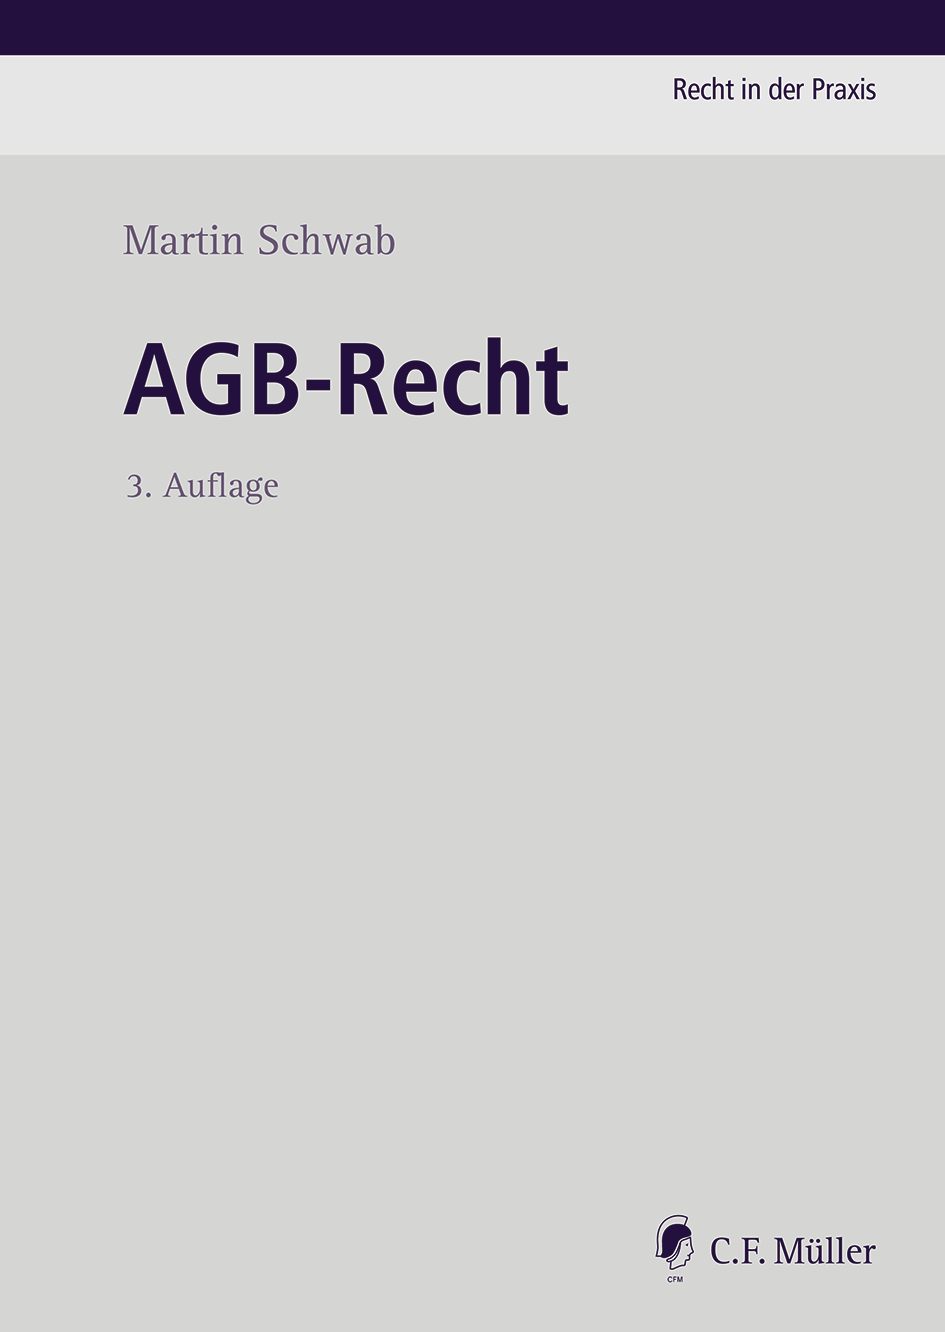 Abbildung: AGB-Recht